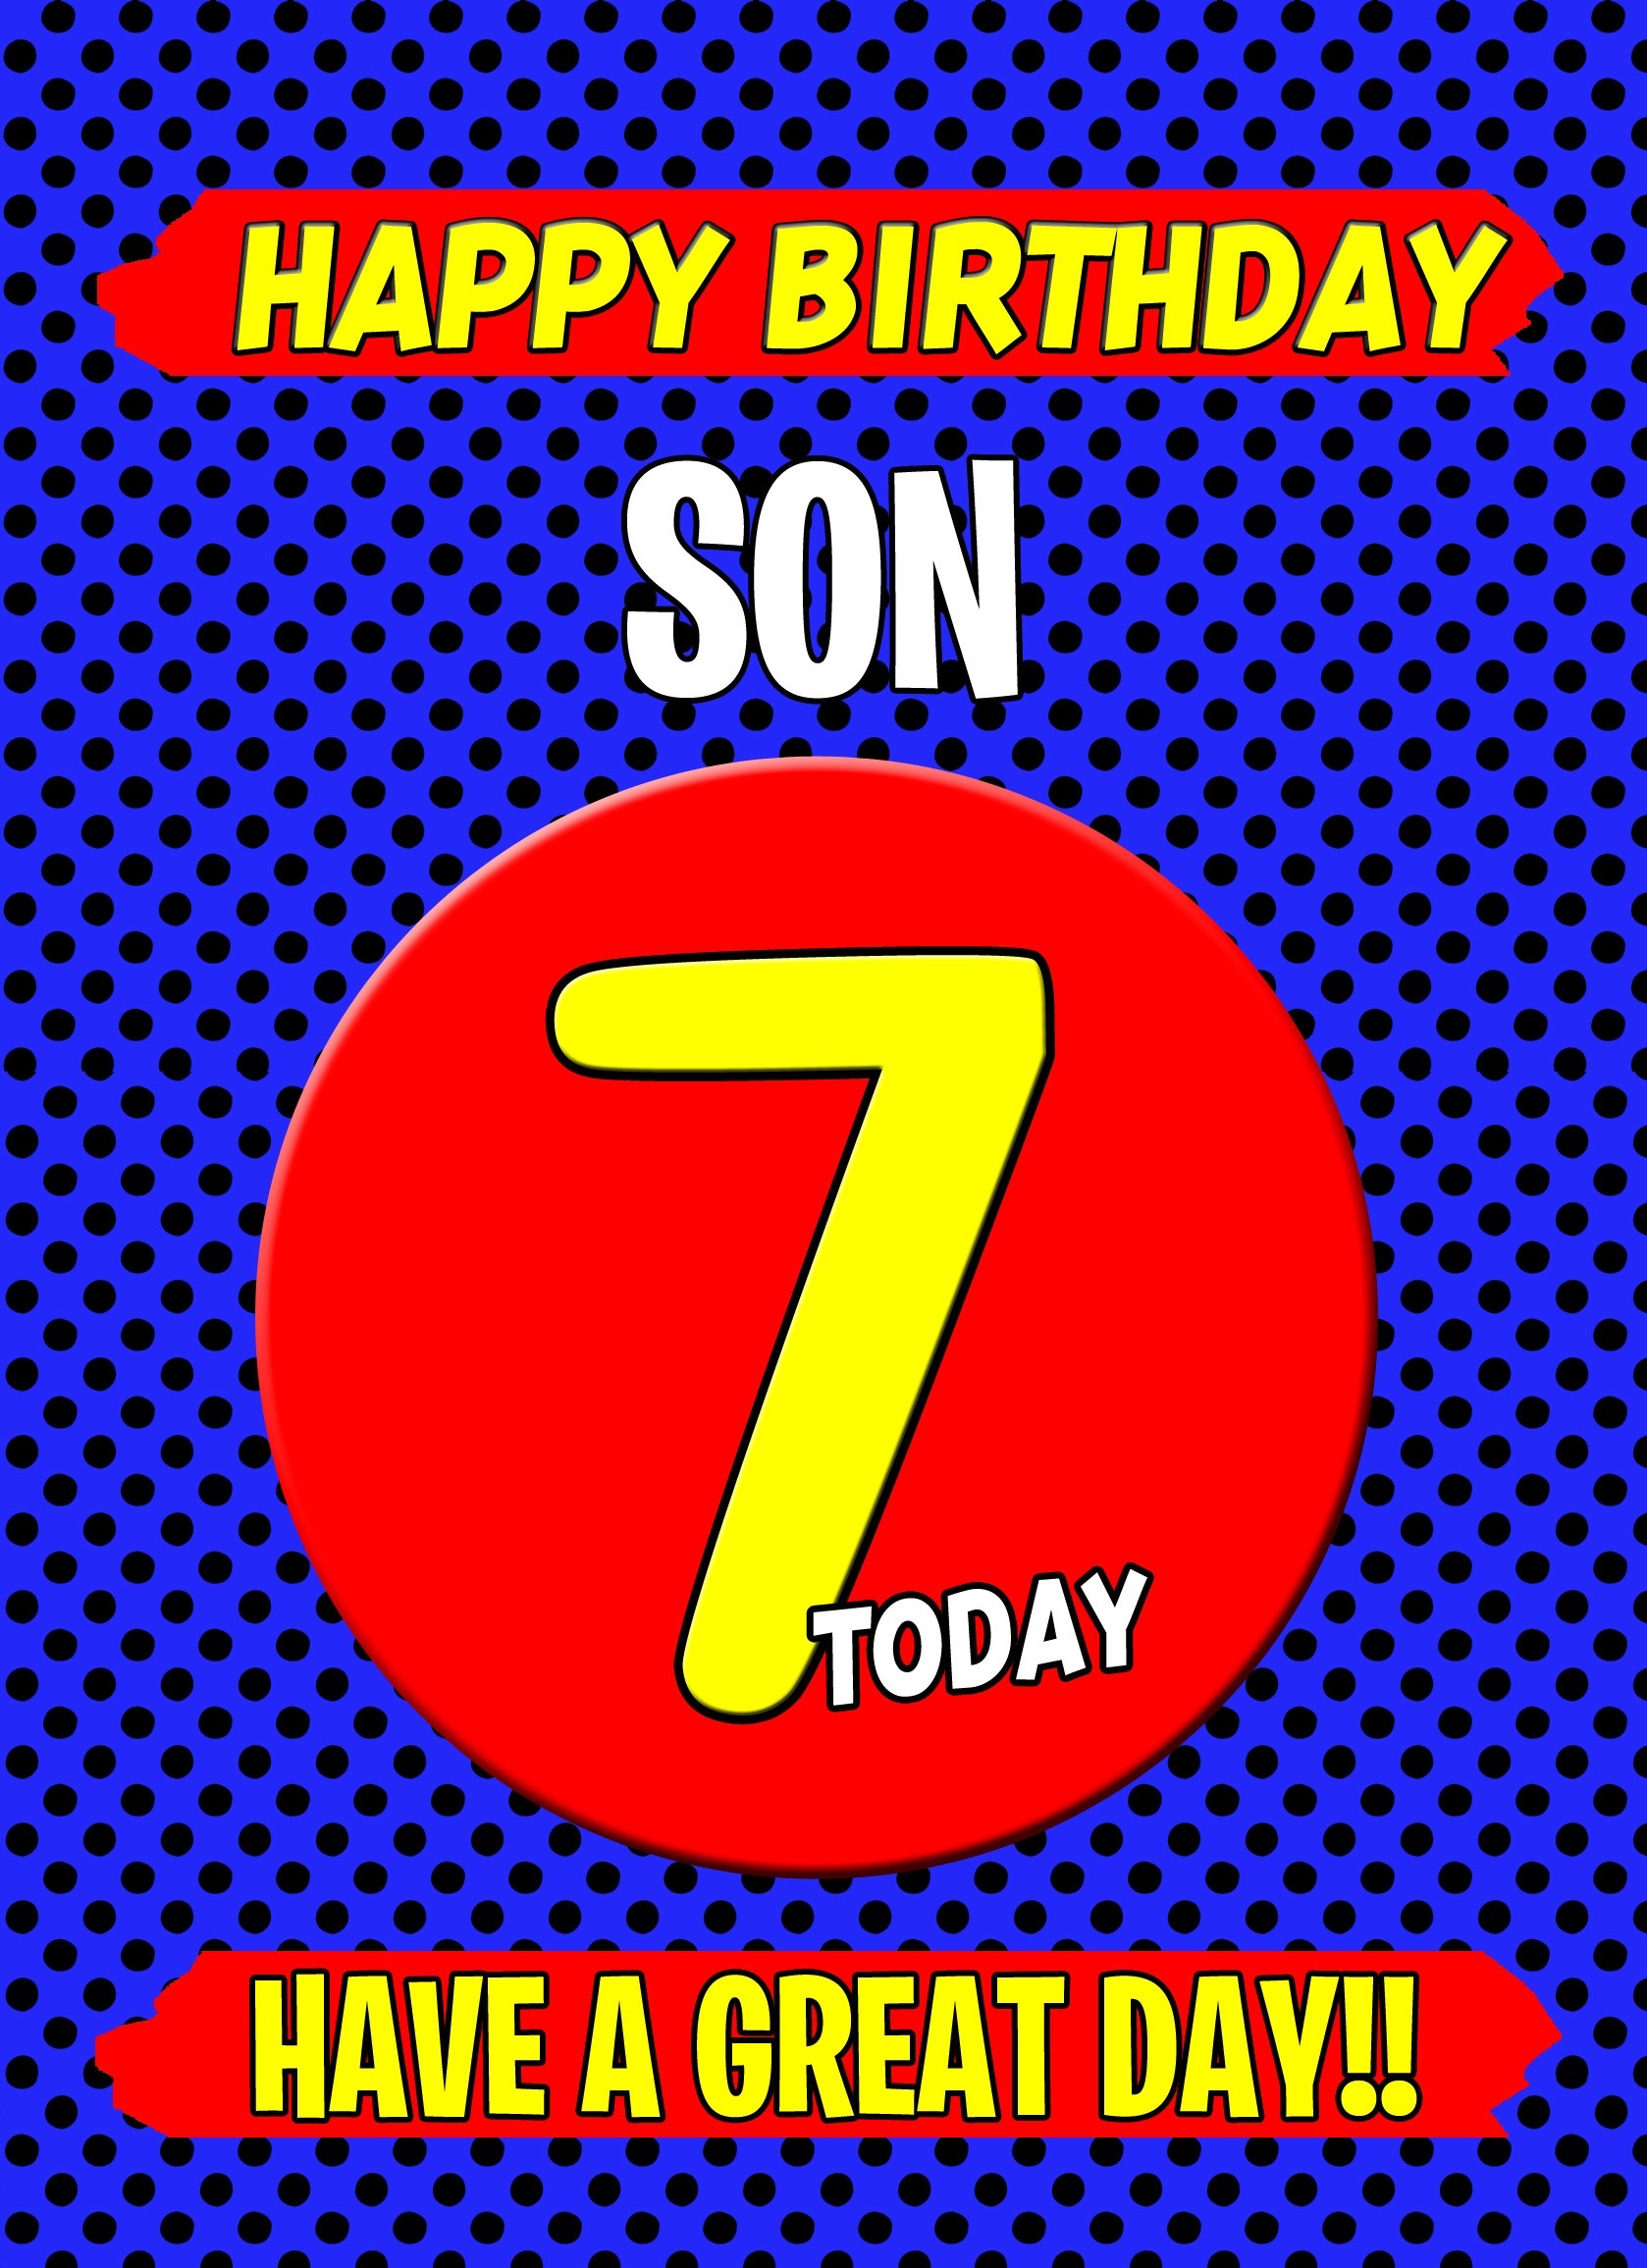 Son 7th Birthday Card (Blue)